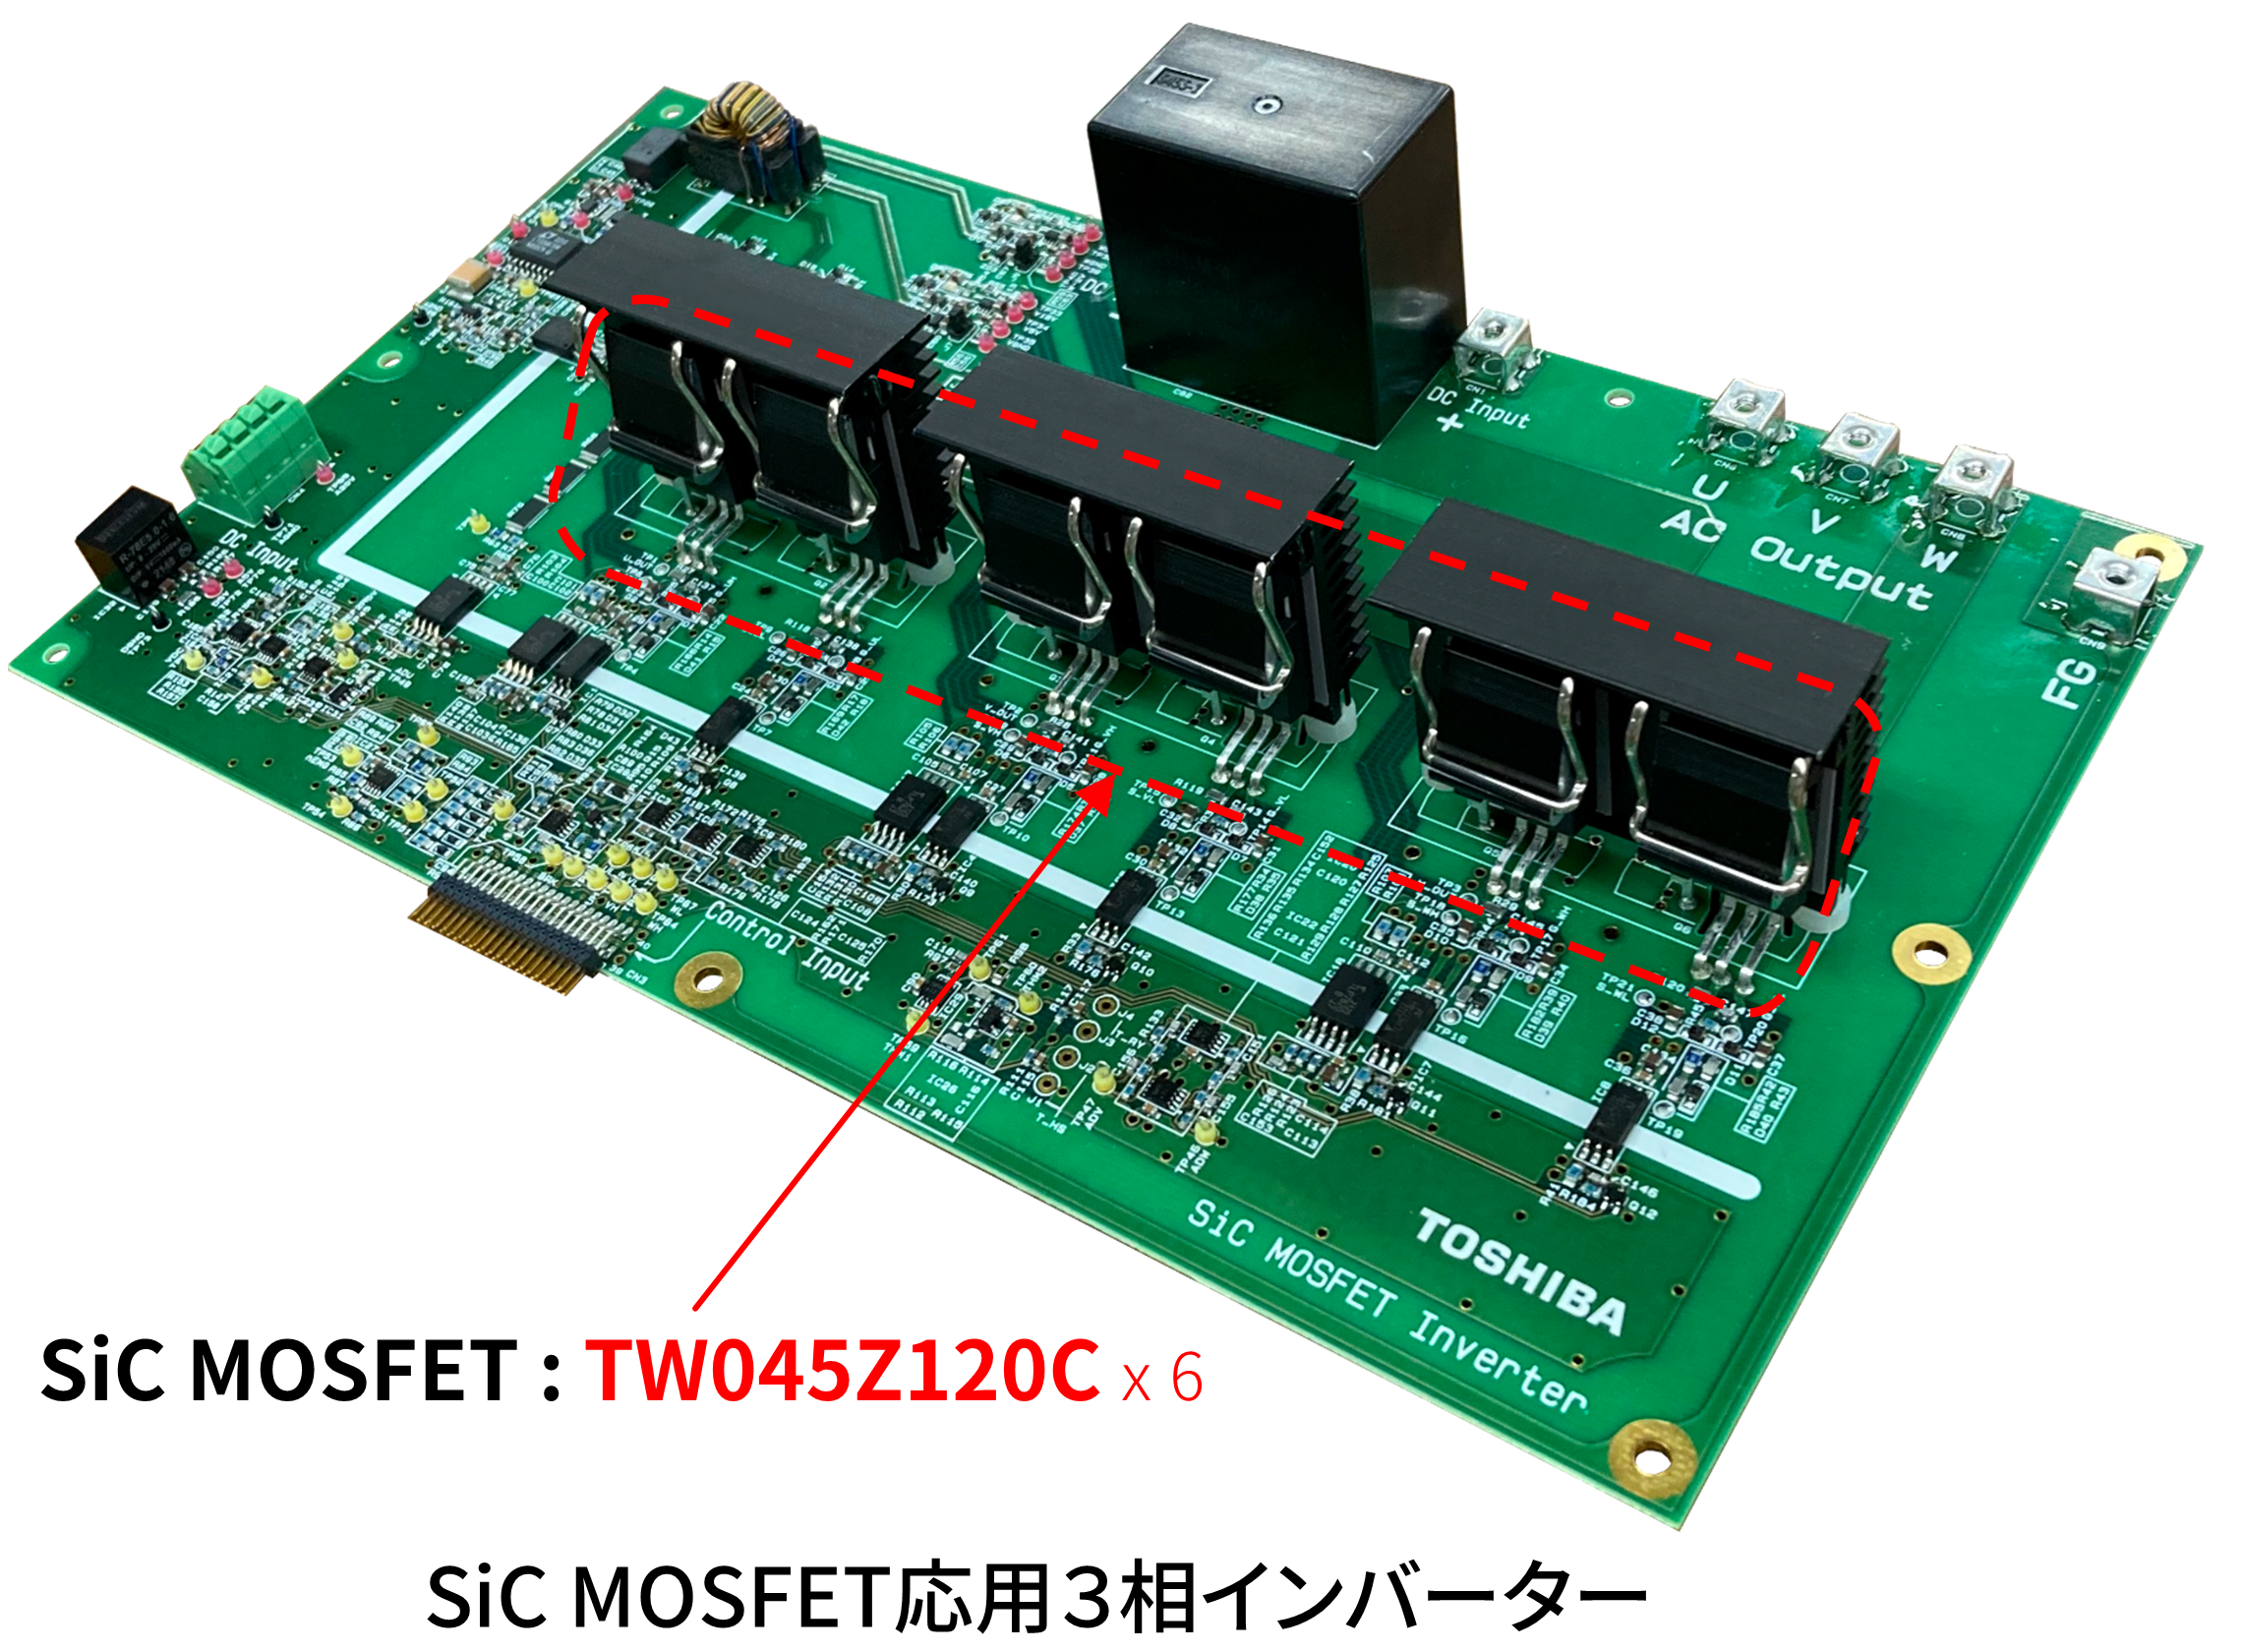 これは、SiC MOSFET応用3相インバーターの画像です。